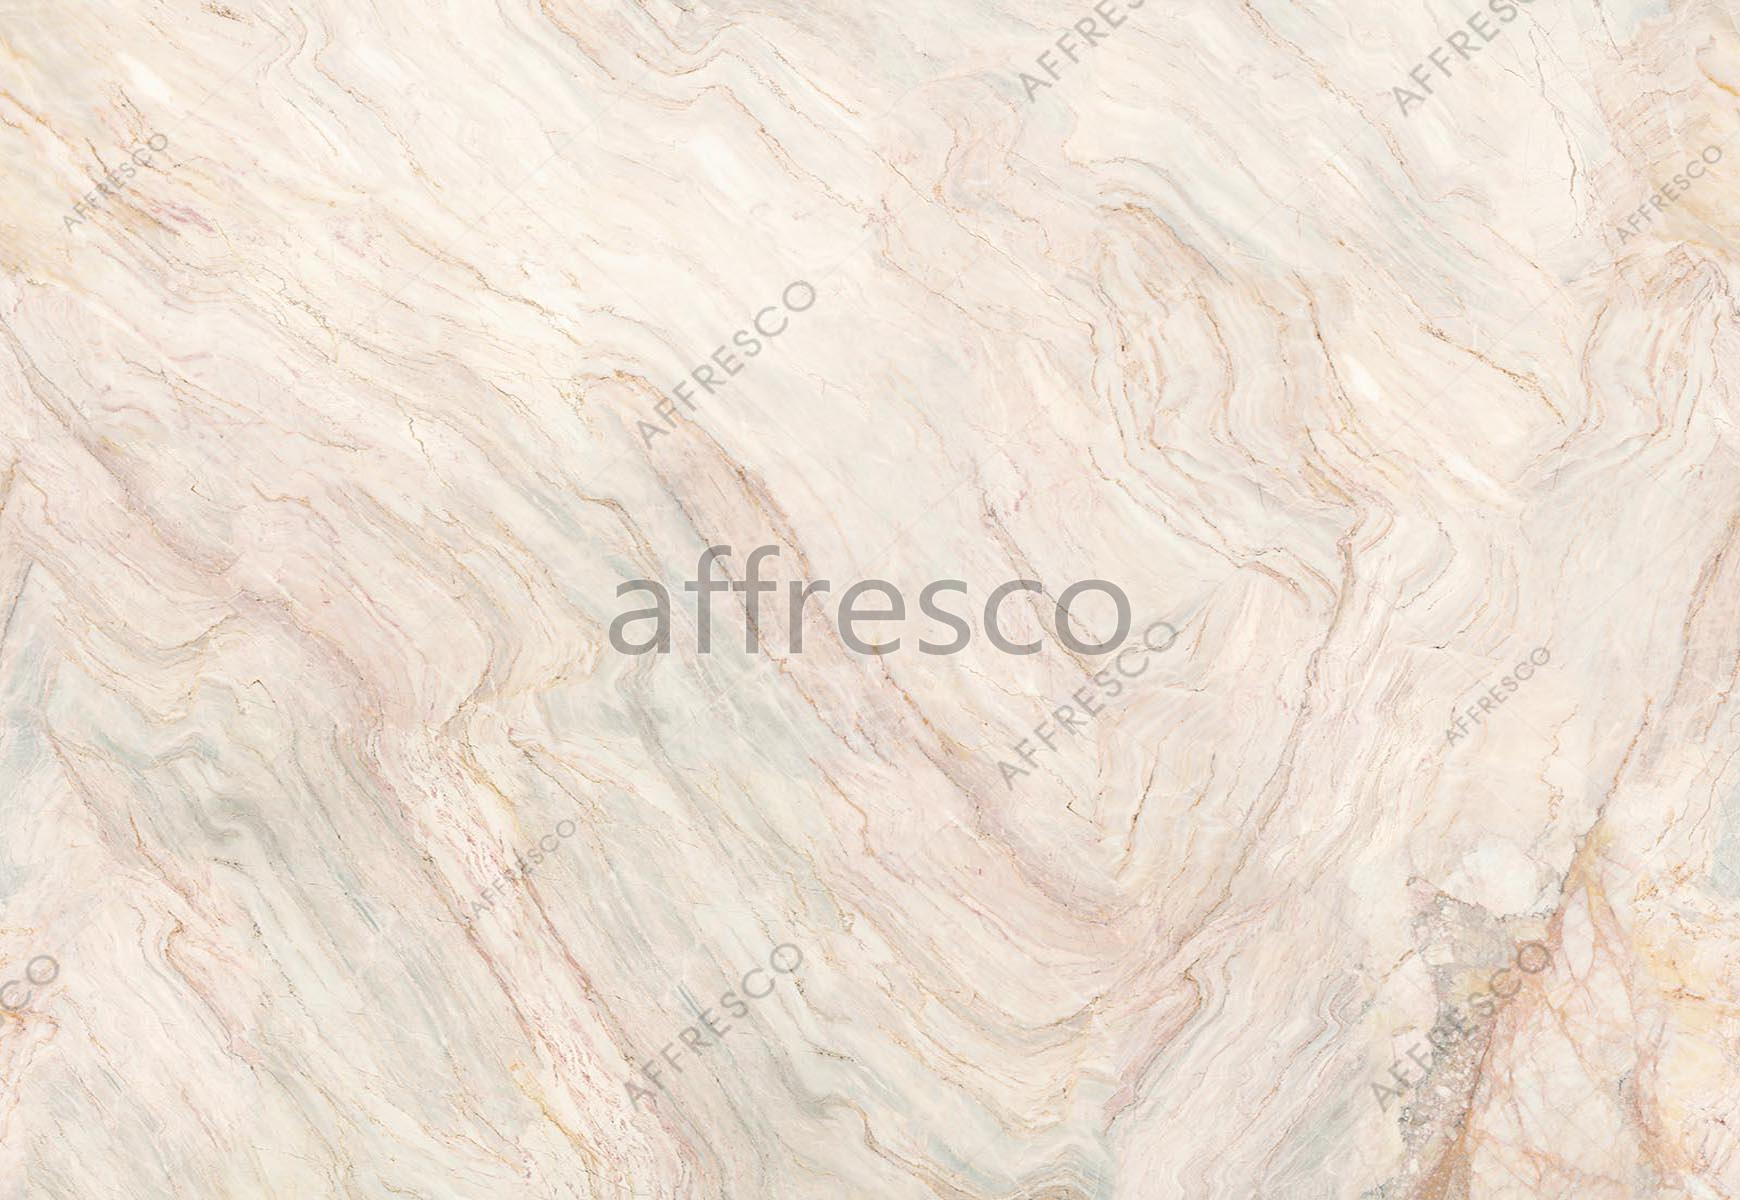 ID139122 | Fluid | stone cut | Affresco Factory